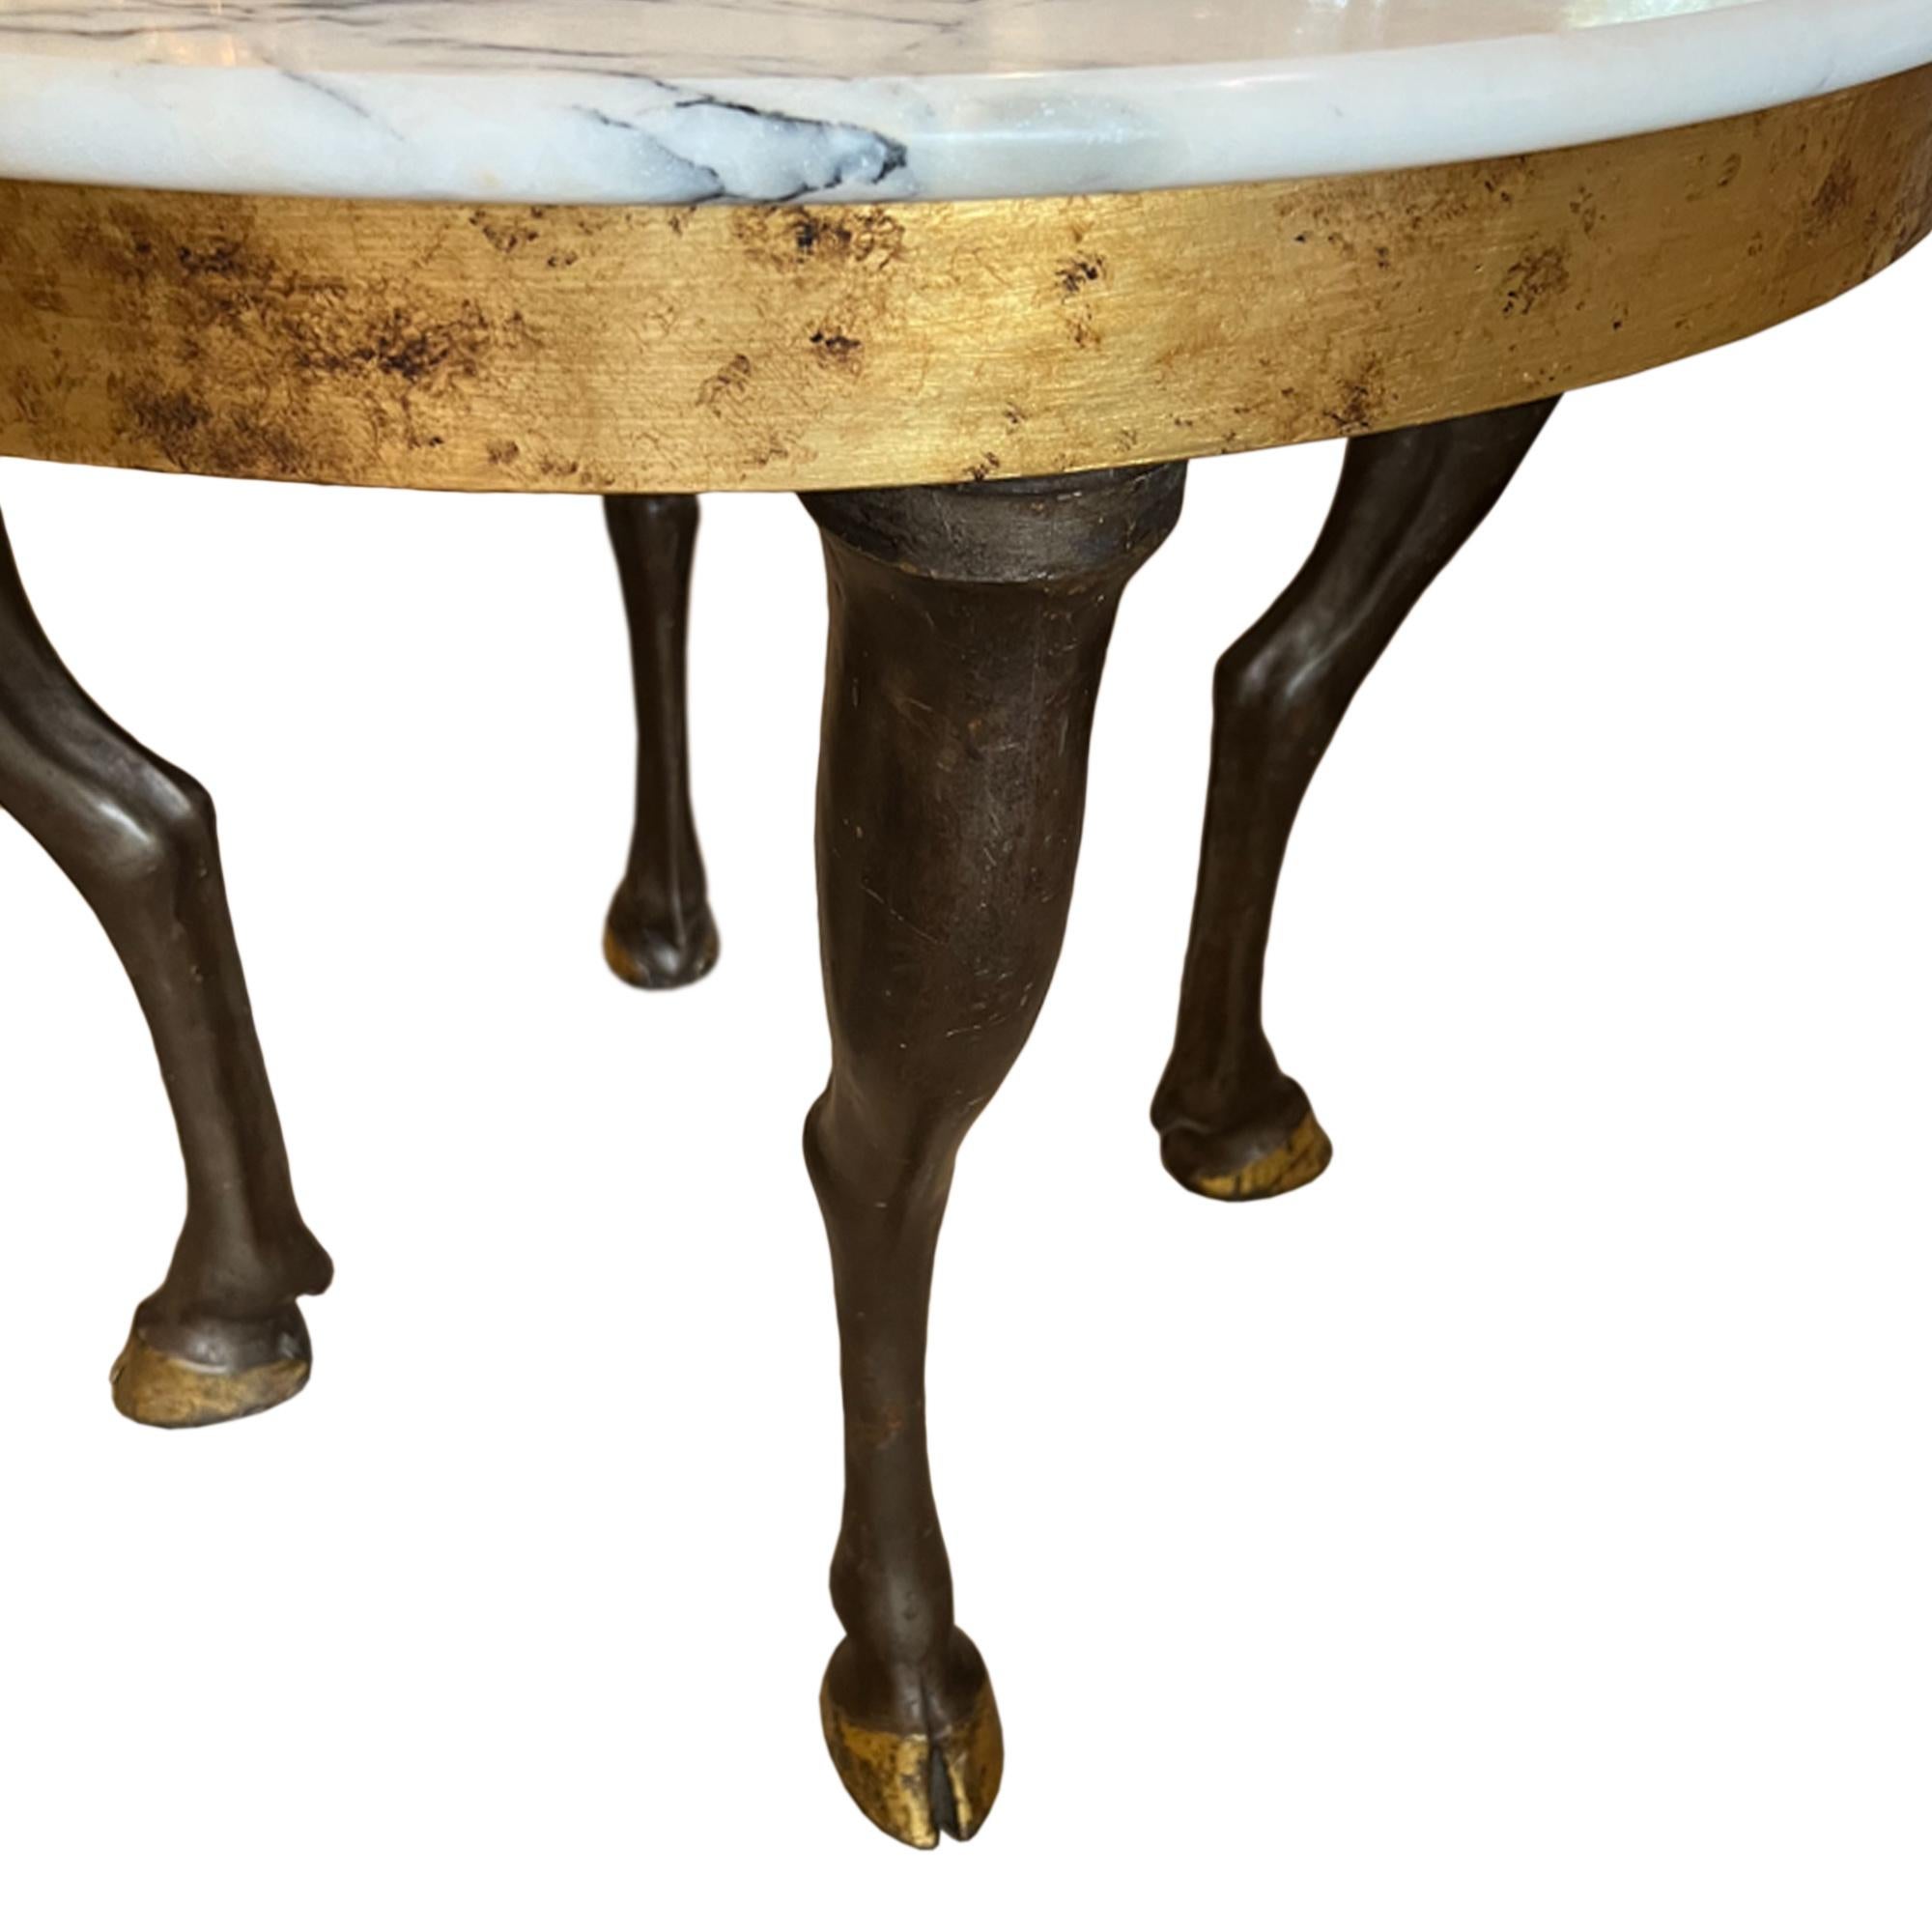 Une table fabuleuse !

Fabriqué en France à la fin des années 1960 - Le superbe plateau en marbre tardif est soutenu par des pieds de cheval, avec des sabots dorés. Veuillez regarder toutes nos photos pour voir les détails.

Un bel exemple de design